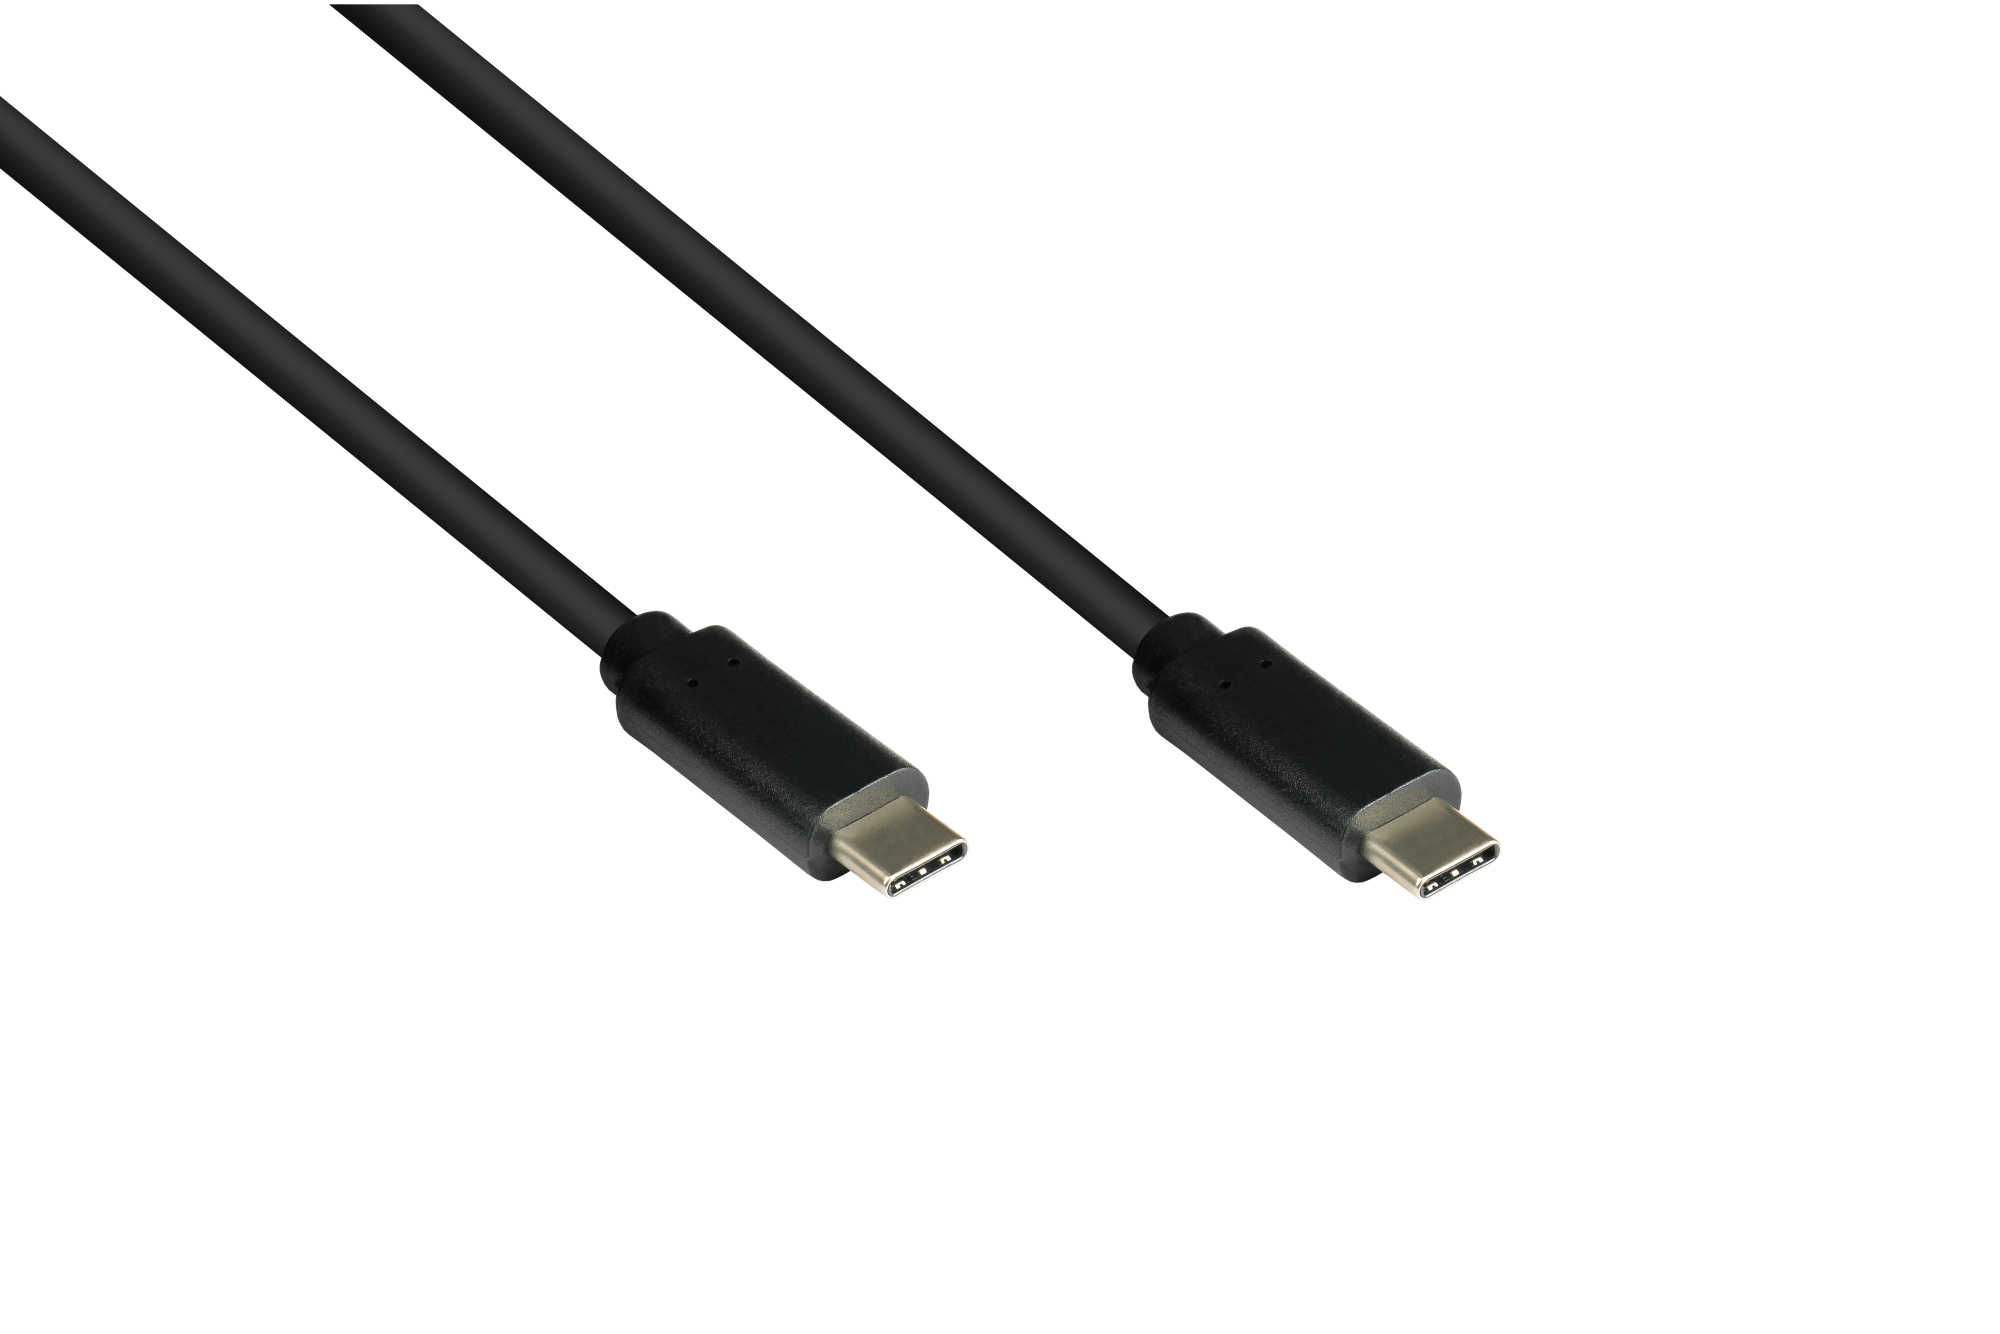 Lade- und Datenkabel USB 3.1 (Gen.1), USB-C™ Stecker beidseitig, CU, schwarz, 1,5m, Good Connections